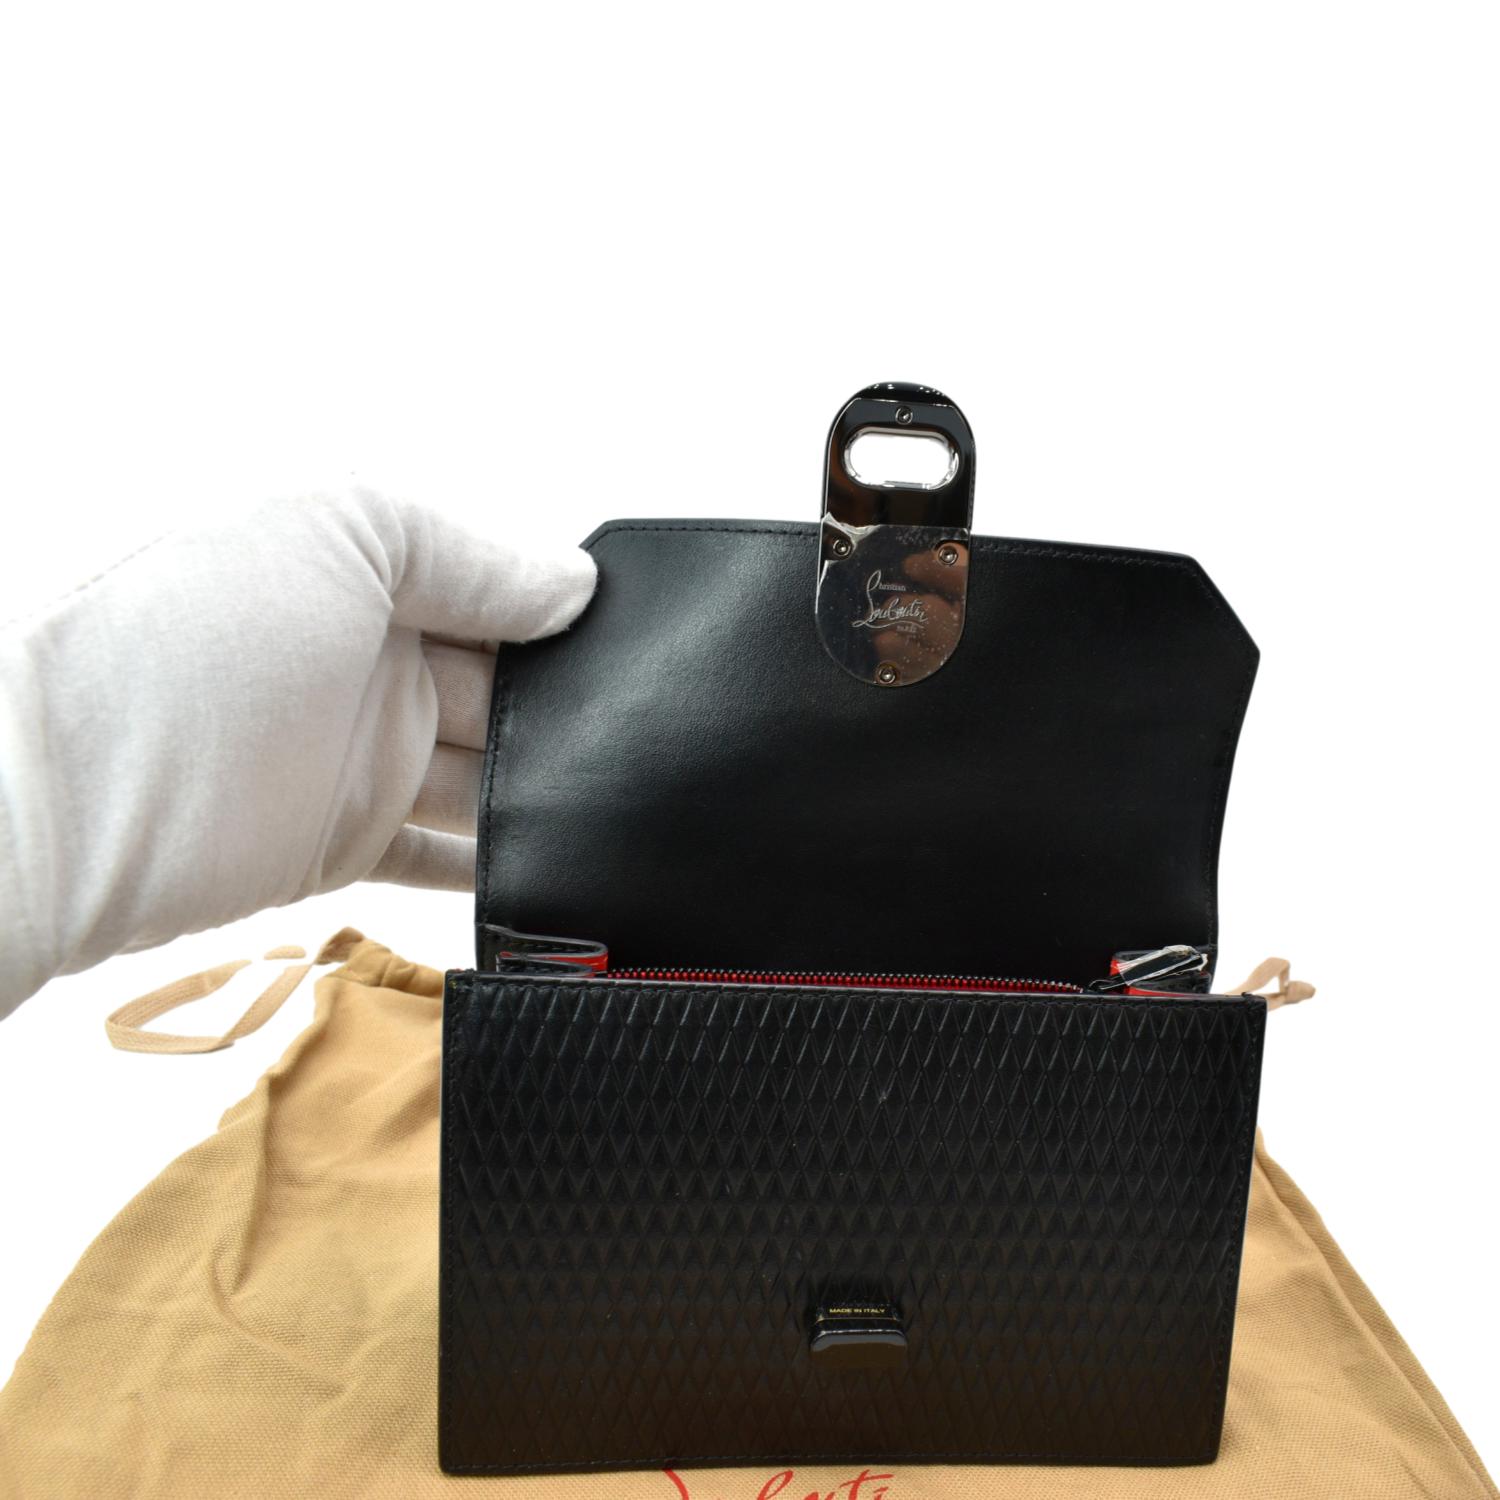 Christian Louboutin Elisa Black Leather shoulder bag 8.7x5.9"